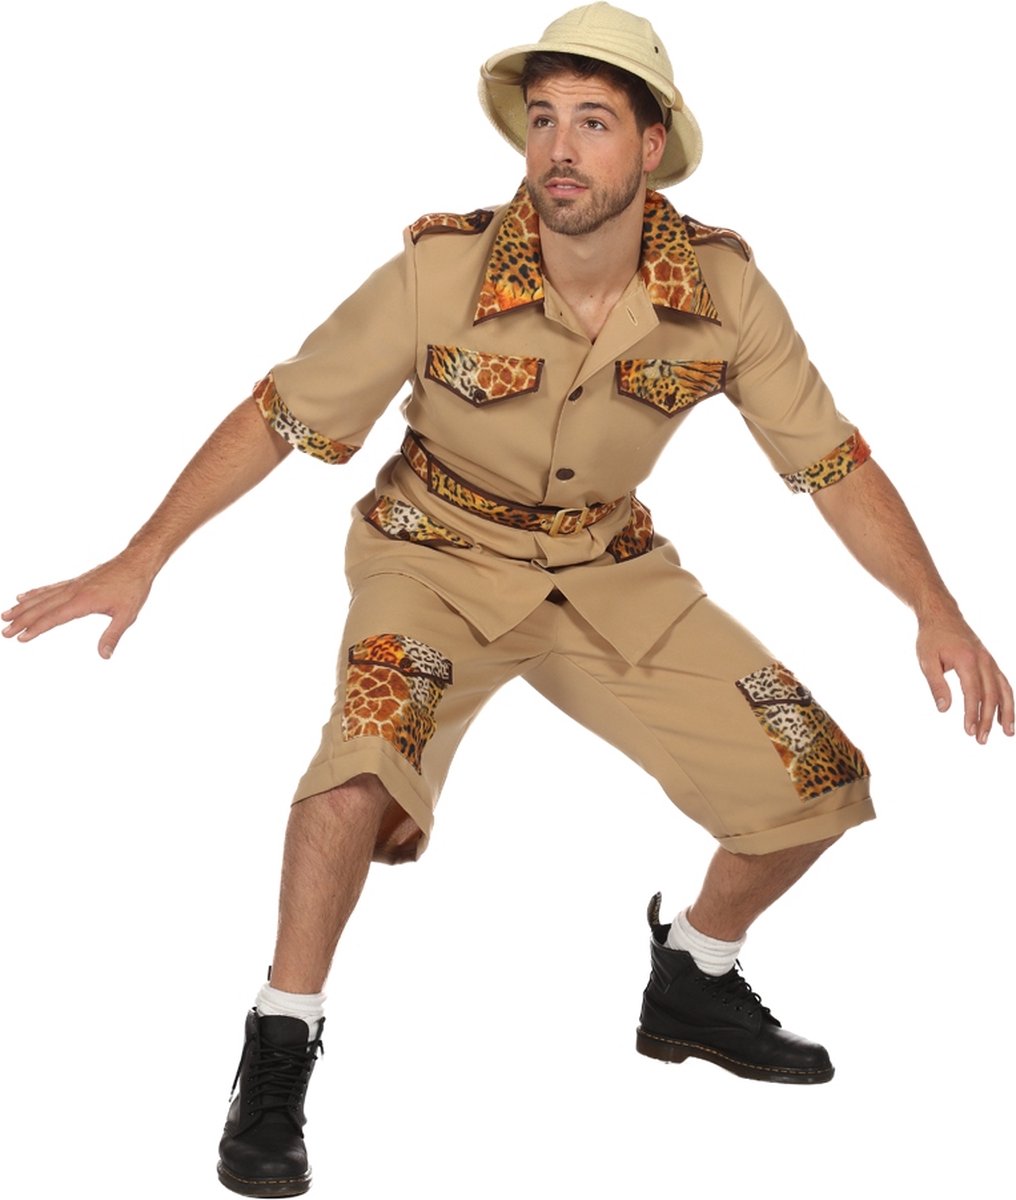 Wilbers & Wilbers - Jungle & Afrika Kostuum - De Jungle Slaapt Nooit Safari - Man - wit / beige - Maat 48 - Carnavalskleding - Verkleedkleding